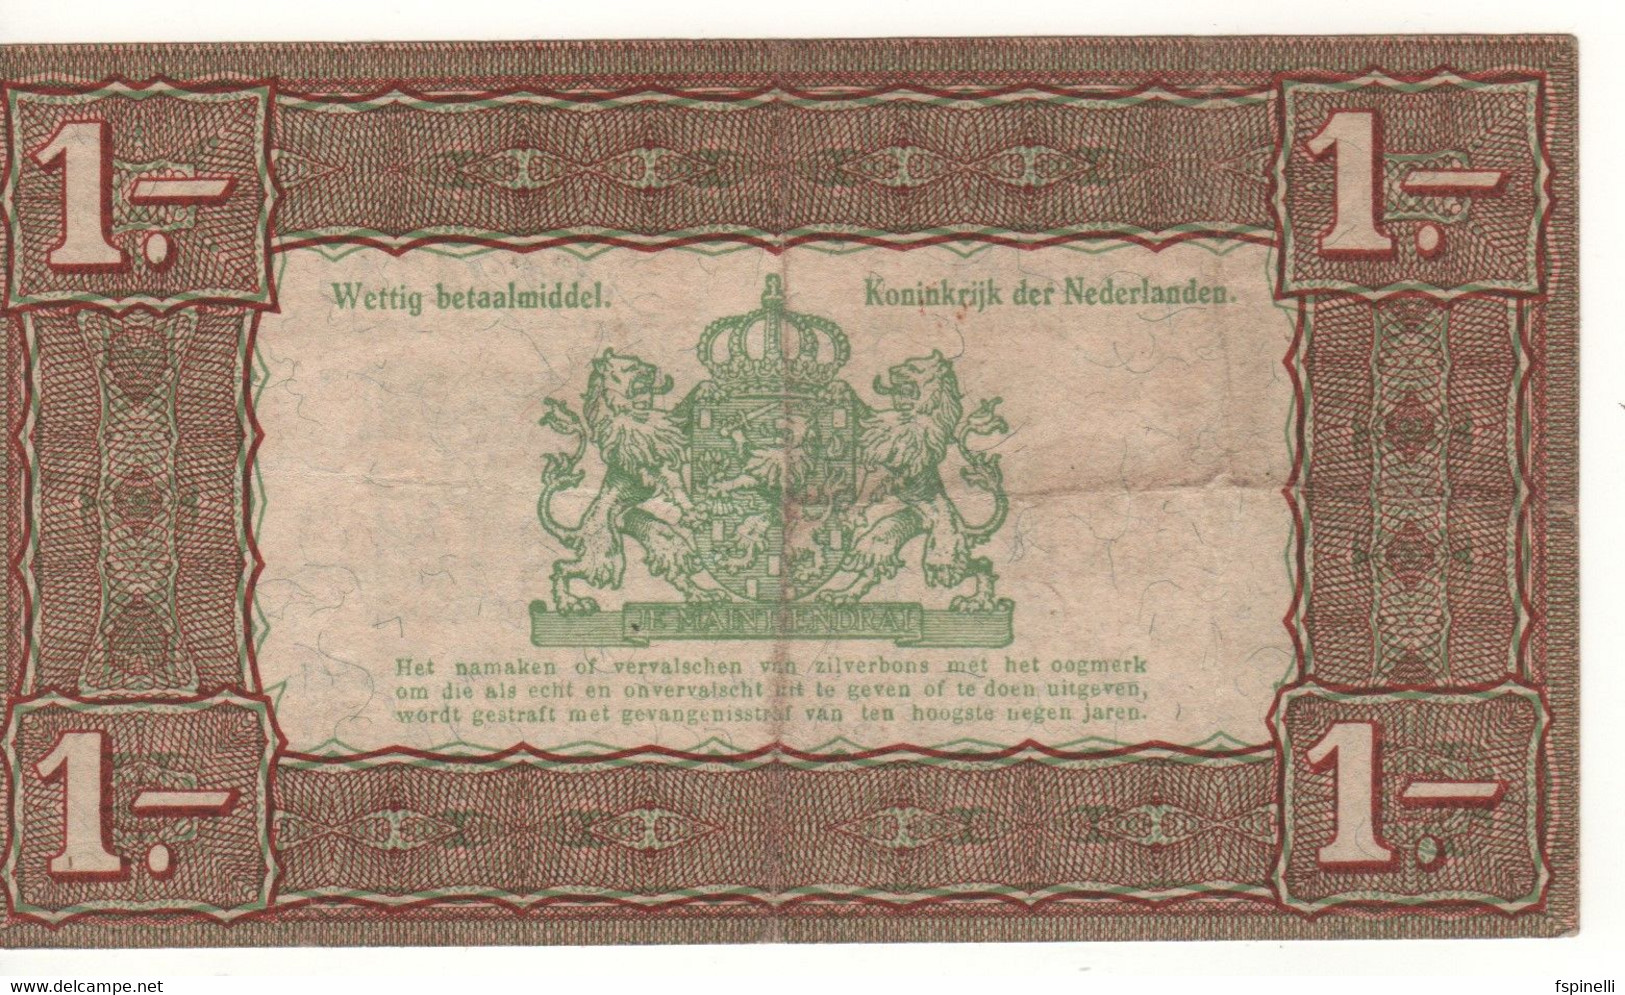 NETHERLANDS  1 Gulden   P61   Dated   1.10.1938 - 1 Gulden